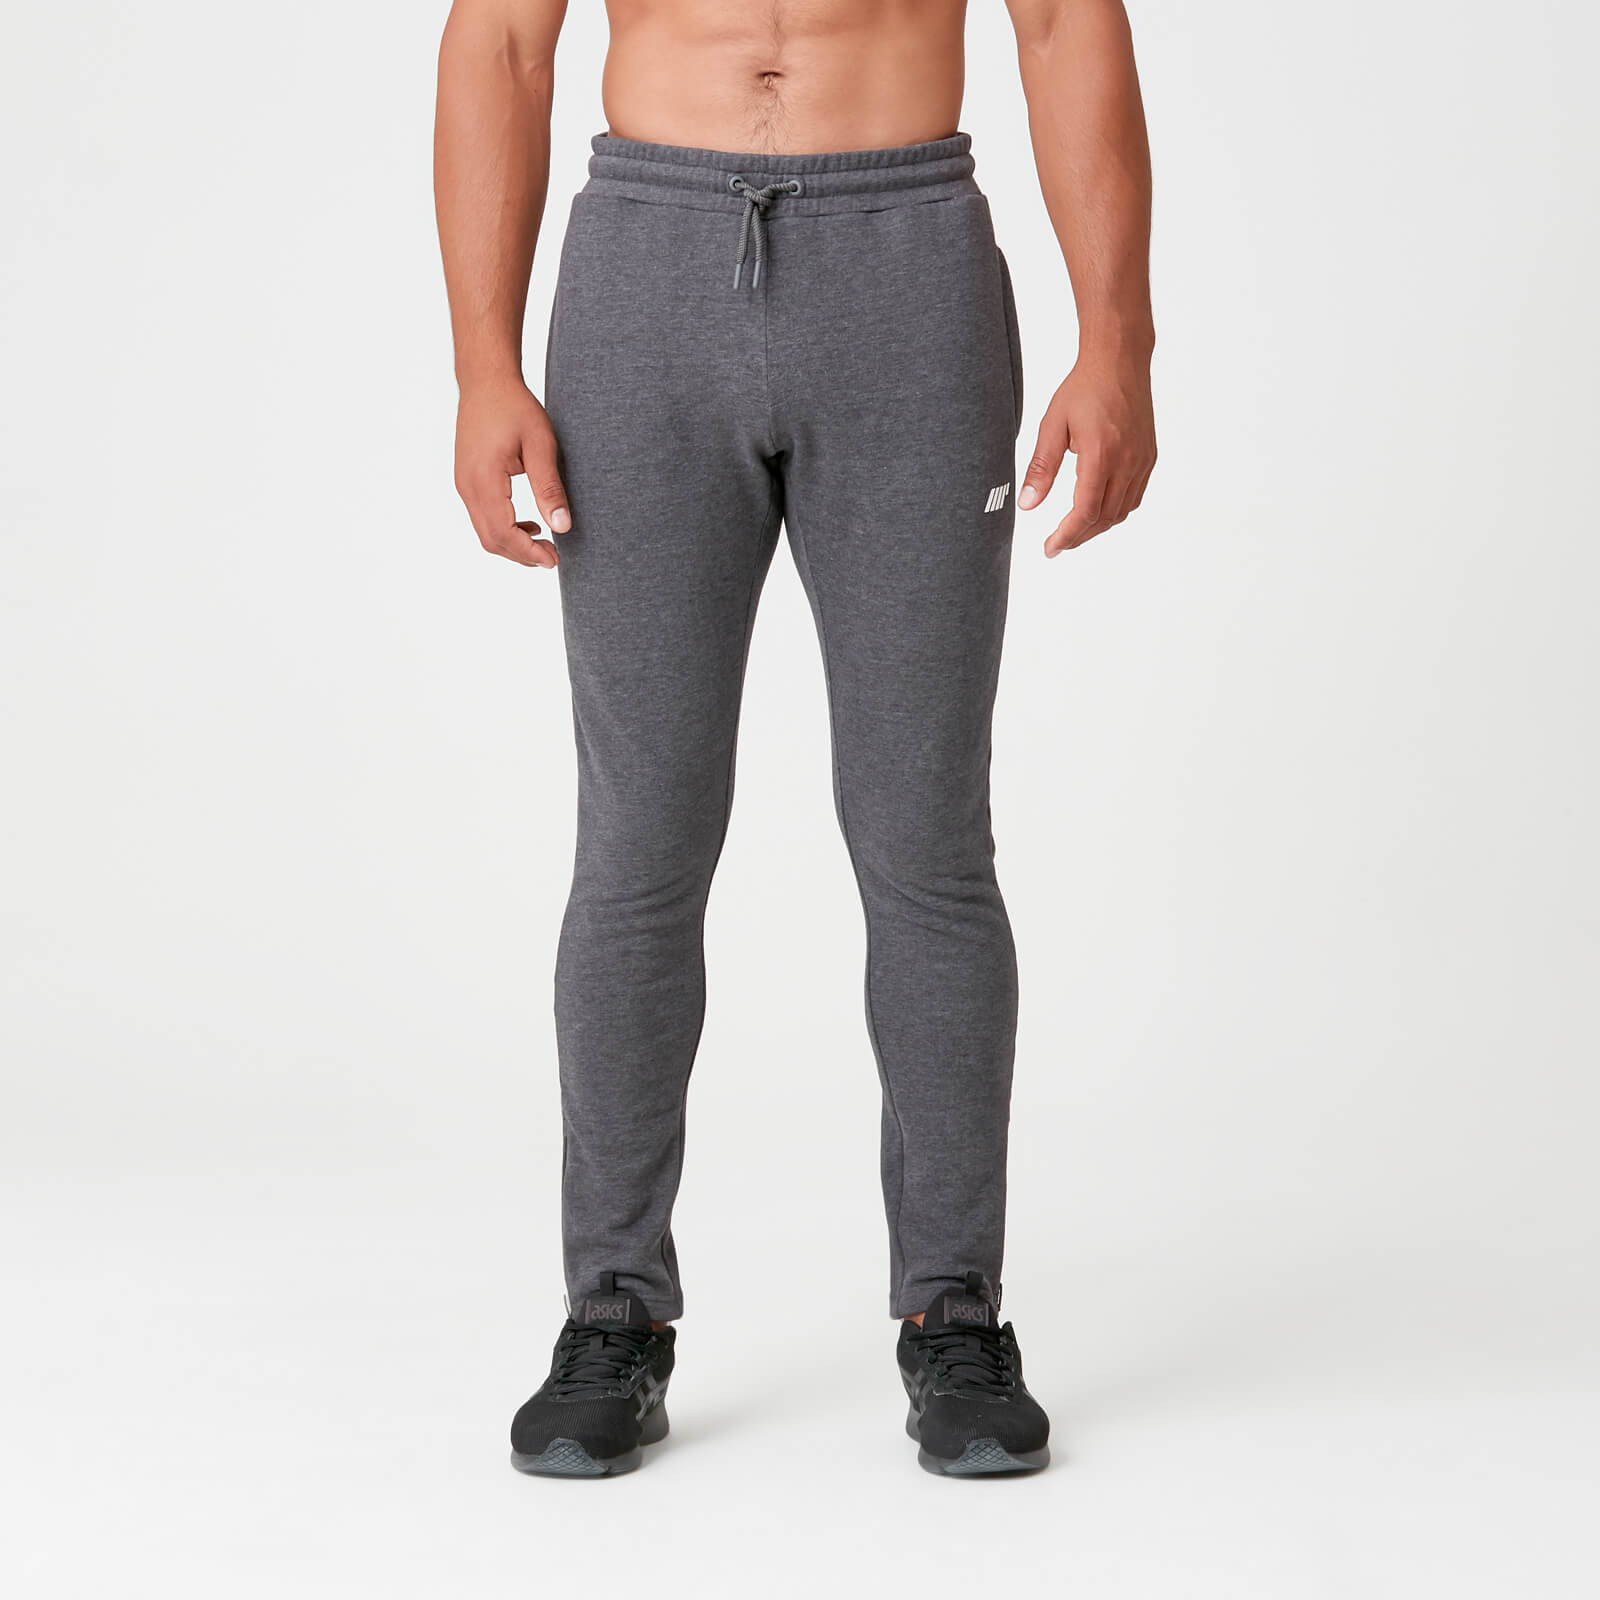 Tru-Fit Slim Fit joggers hlače - Tamno sive - XS